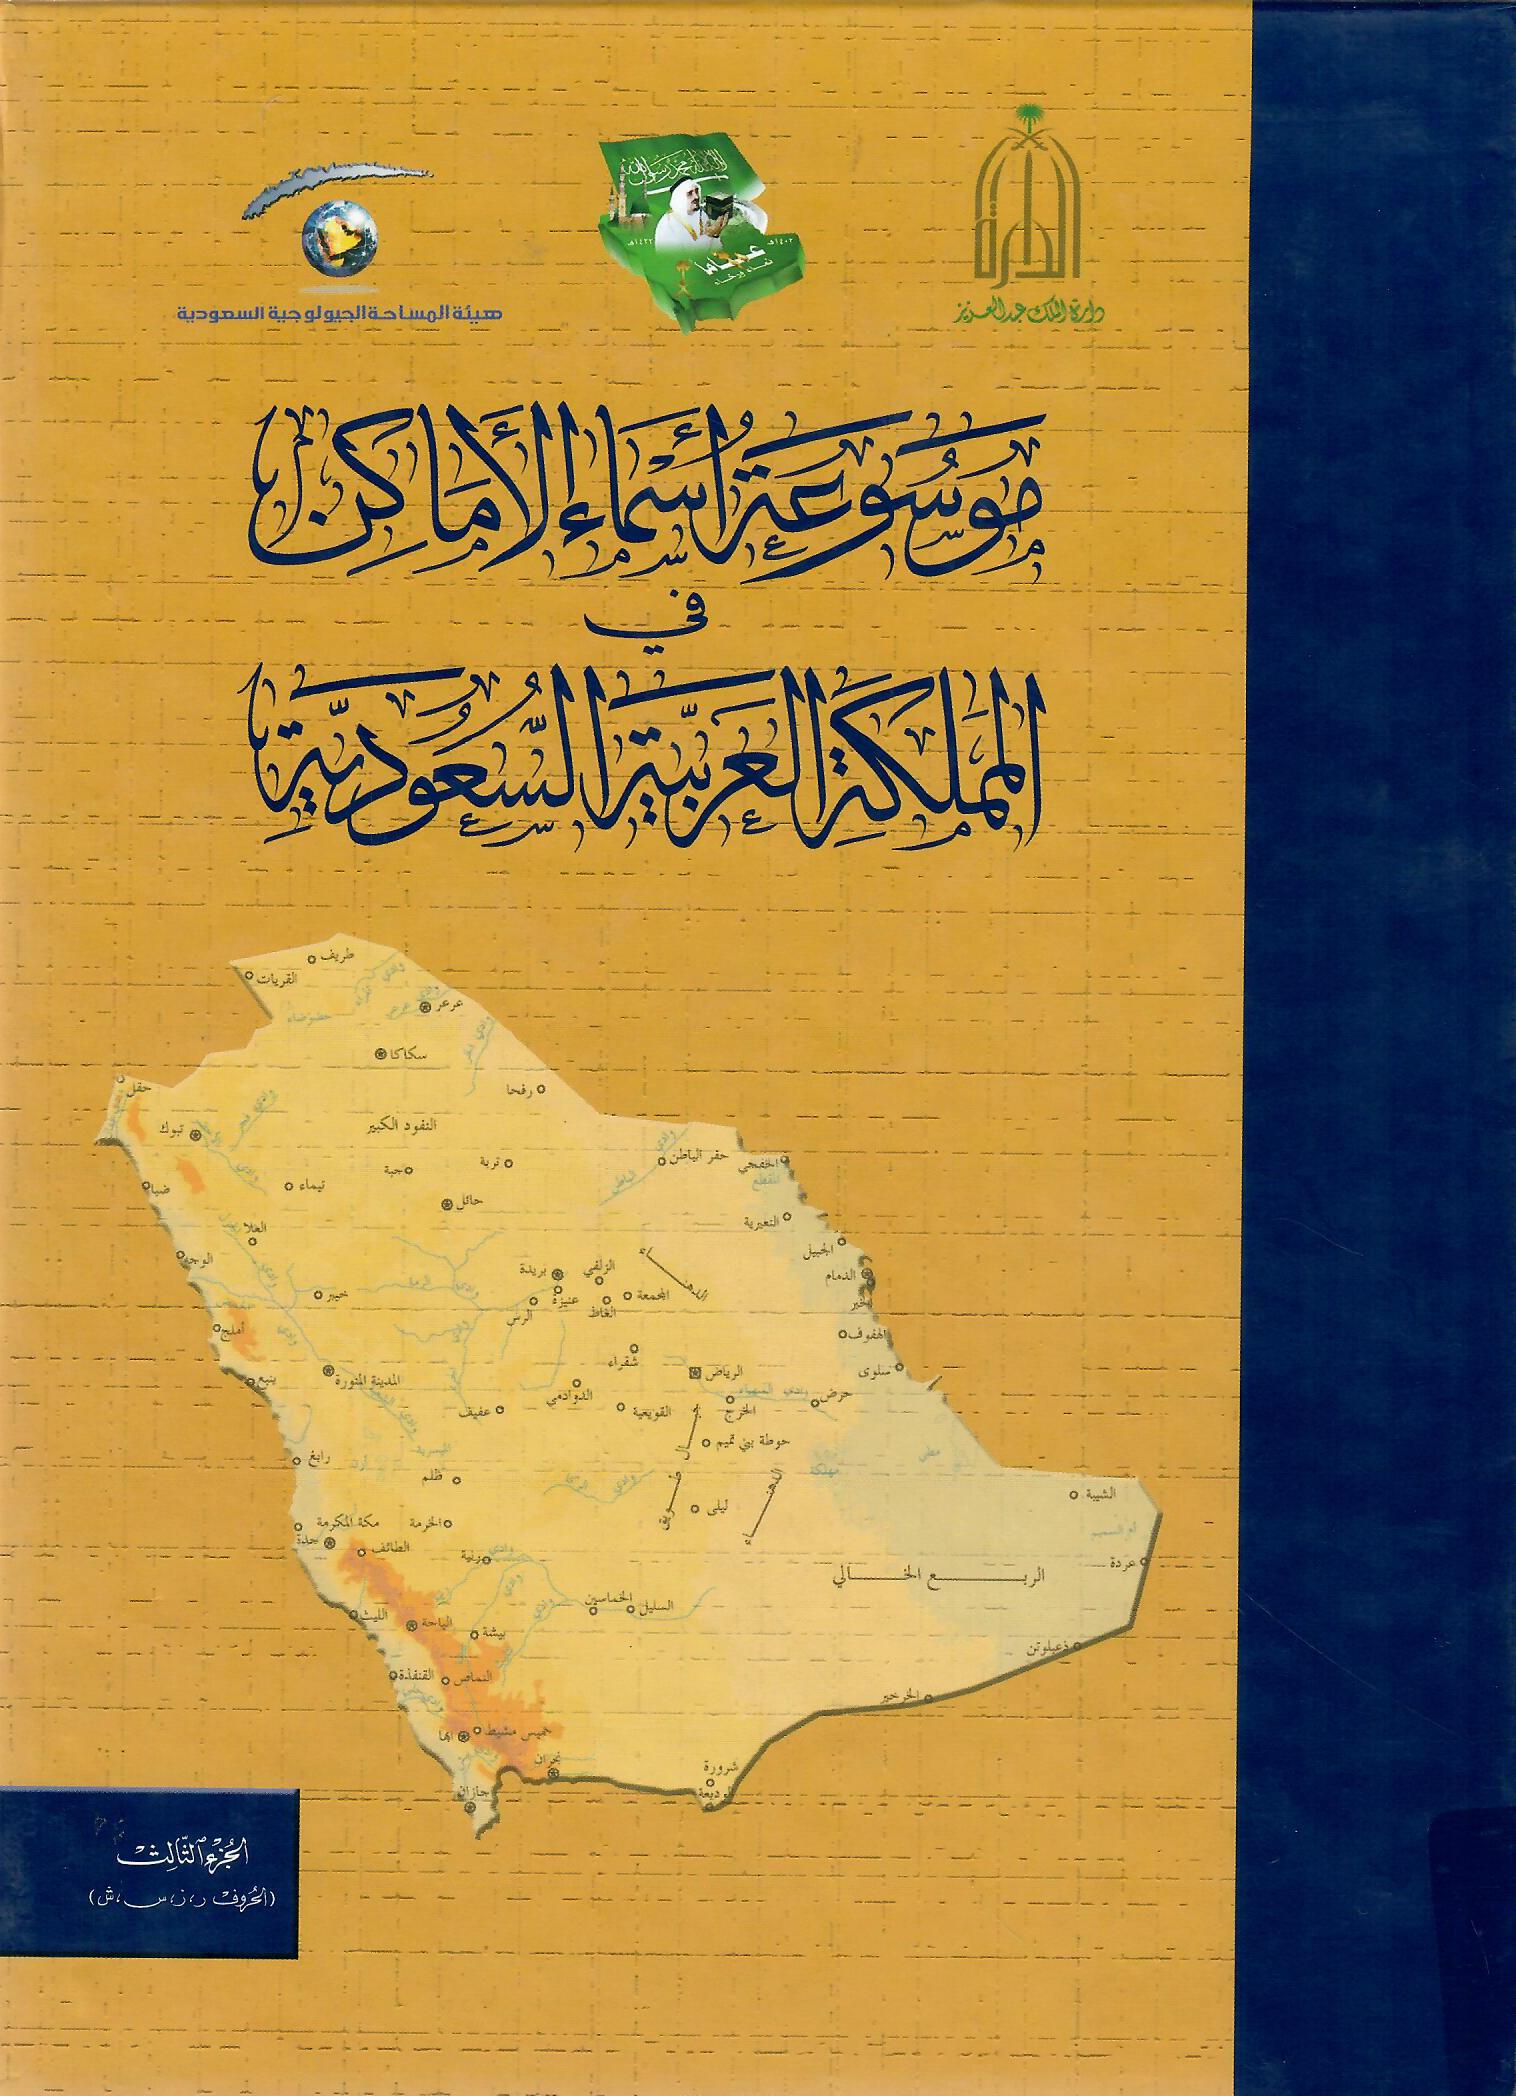 موسوعة أسماء الأماكن في المملكة العربية السعودية الجزء الثالث